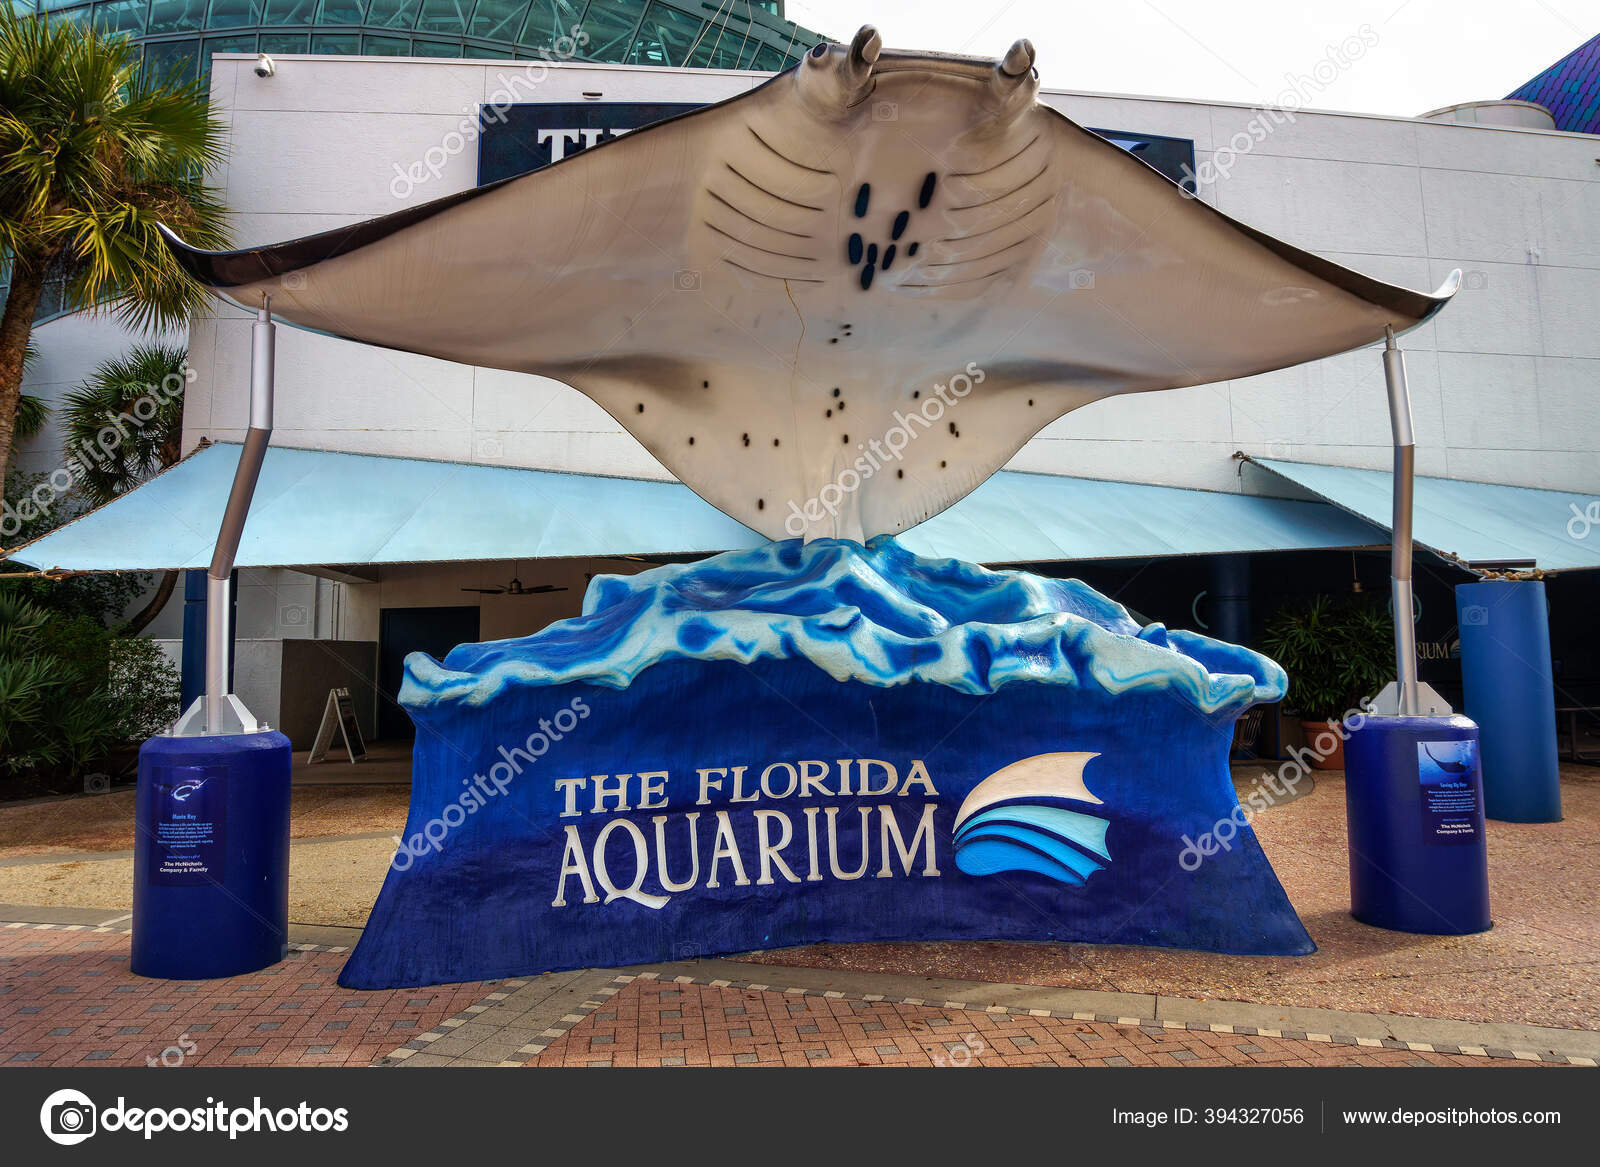 tampa bay rays stadium aquarium